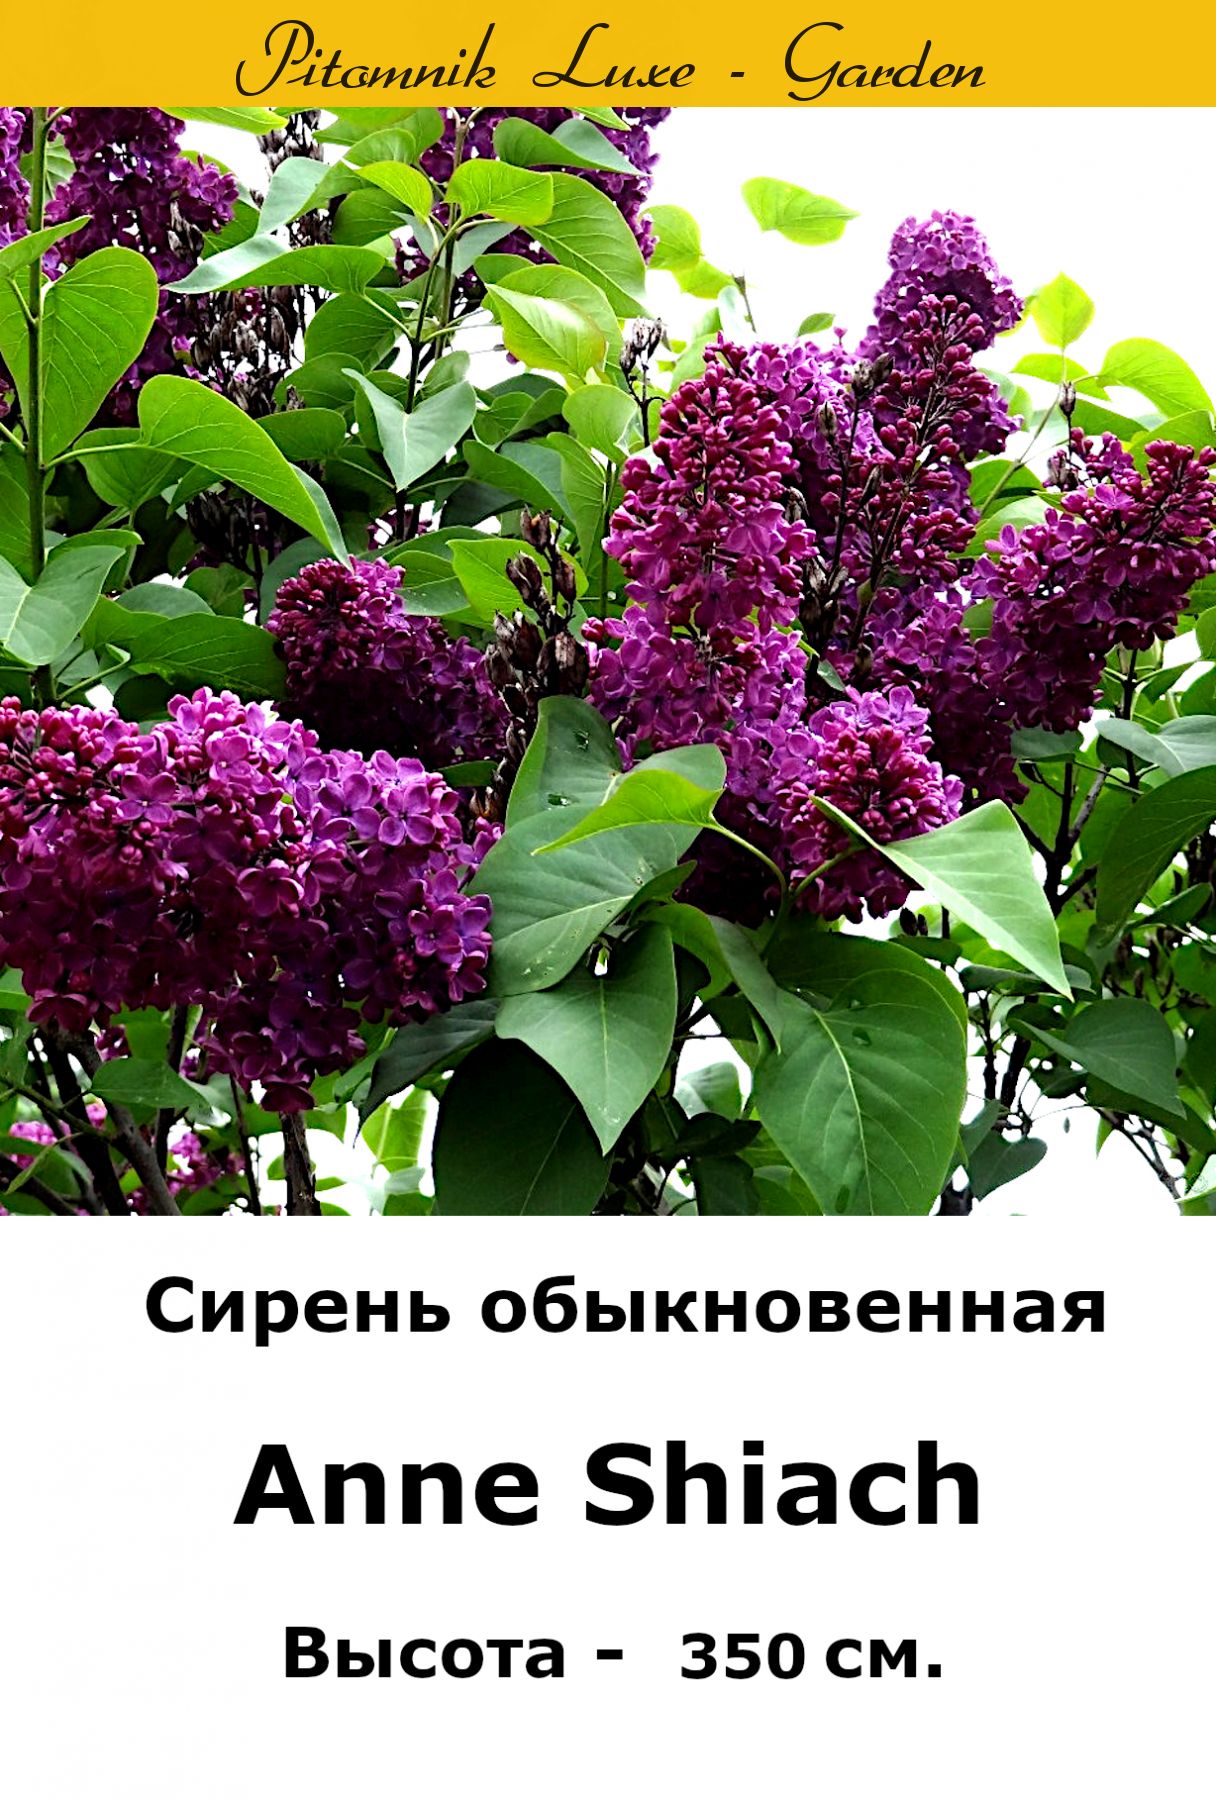 Сирень Anne Shiach